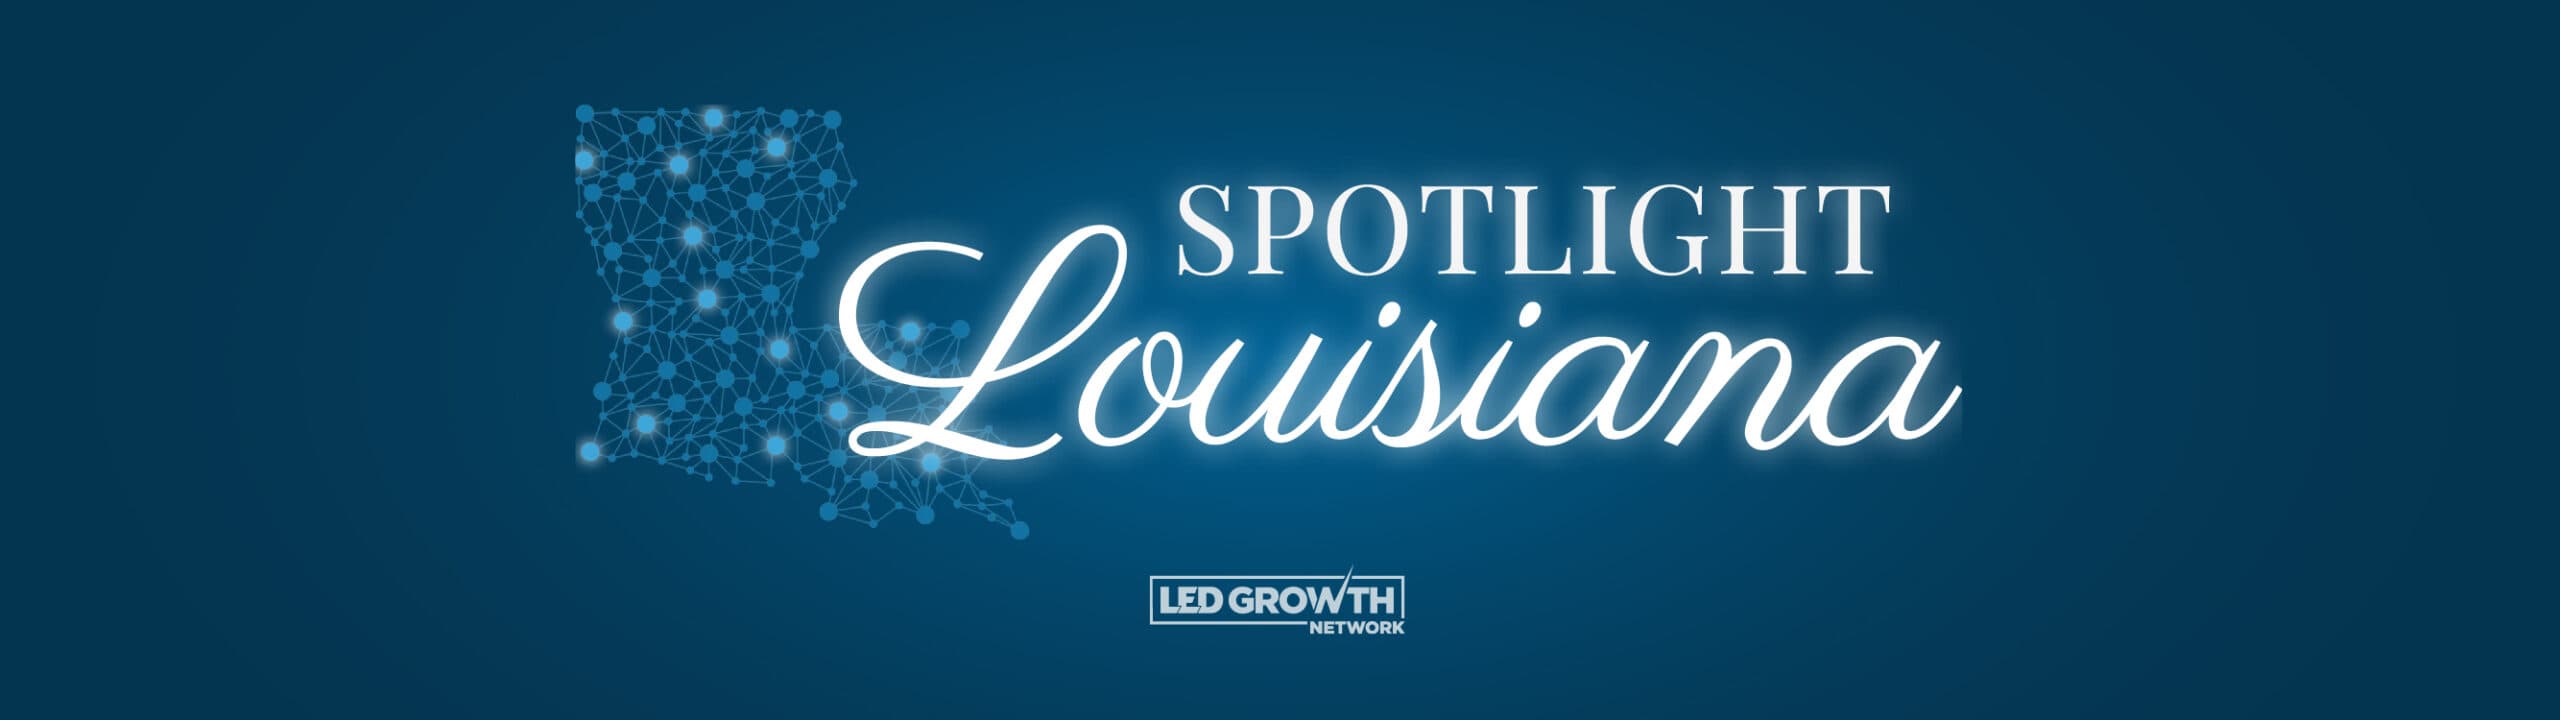 Spotlight Louisiana